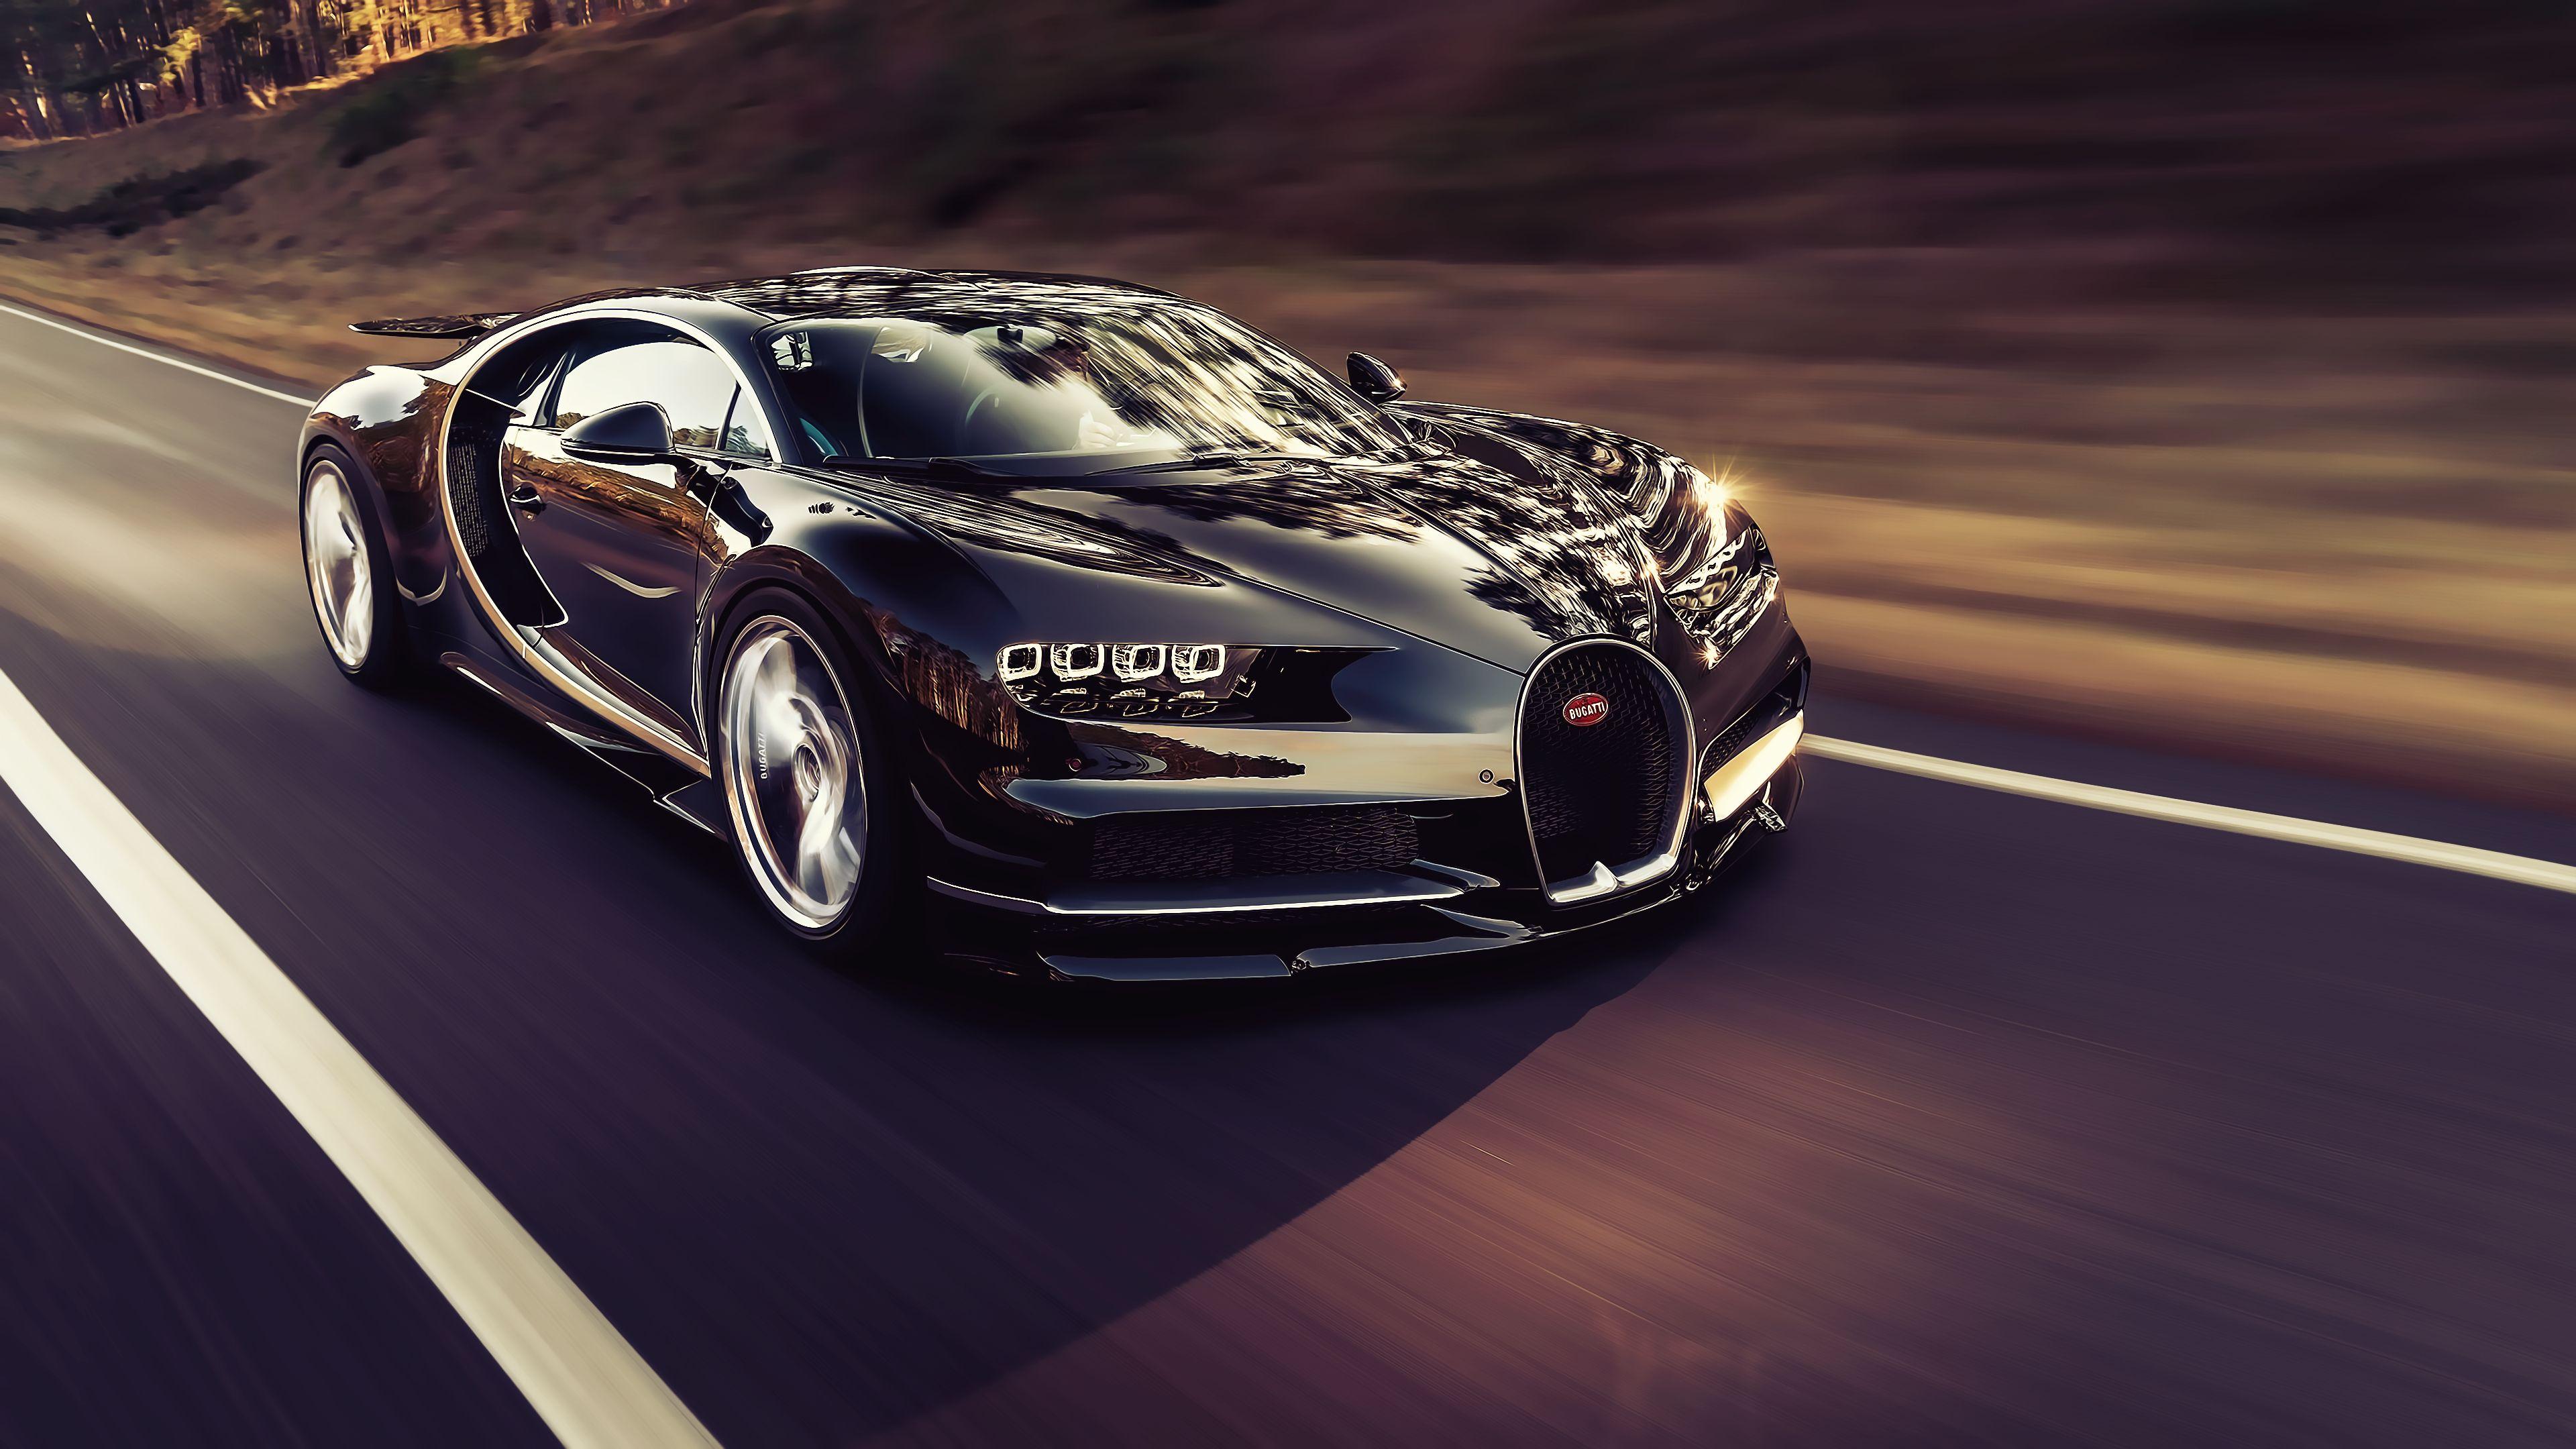 Bugatti Chiron HD Wallpaper and Background Image